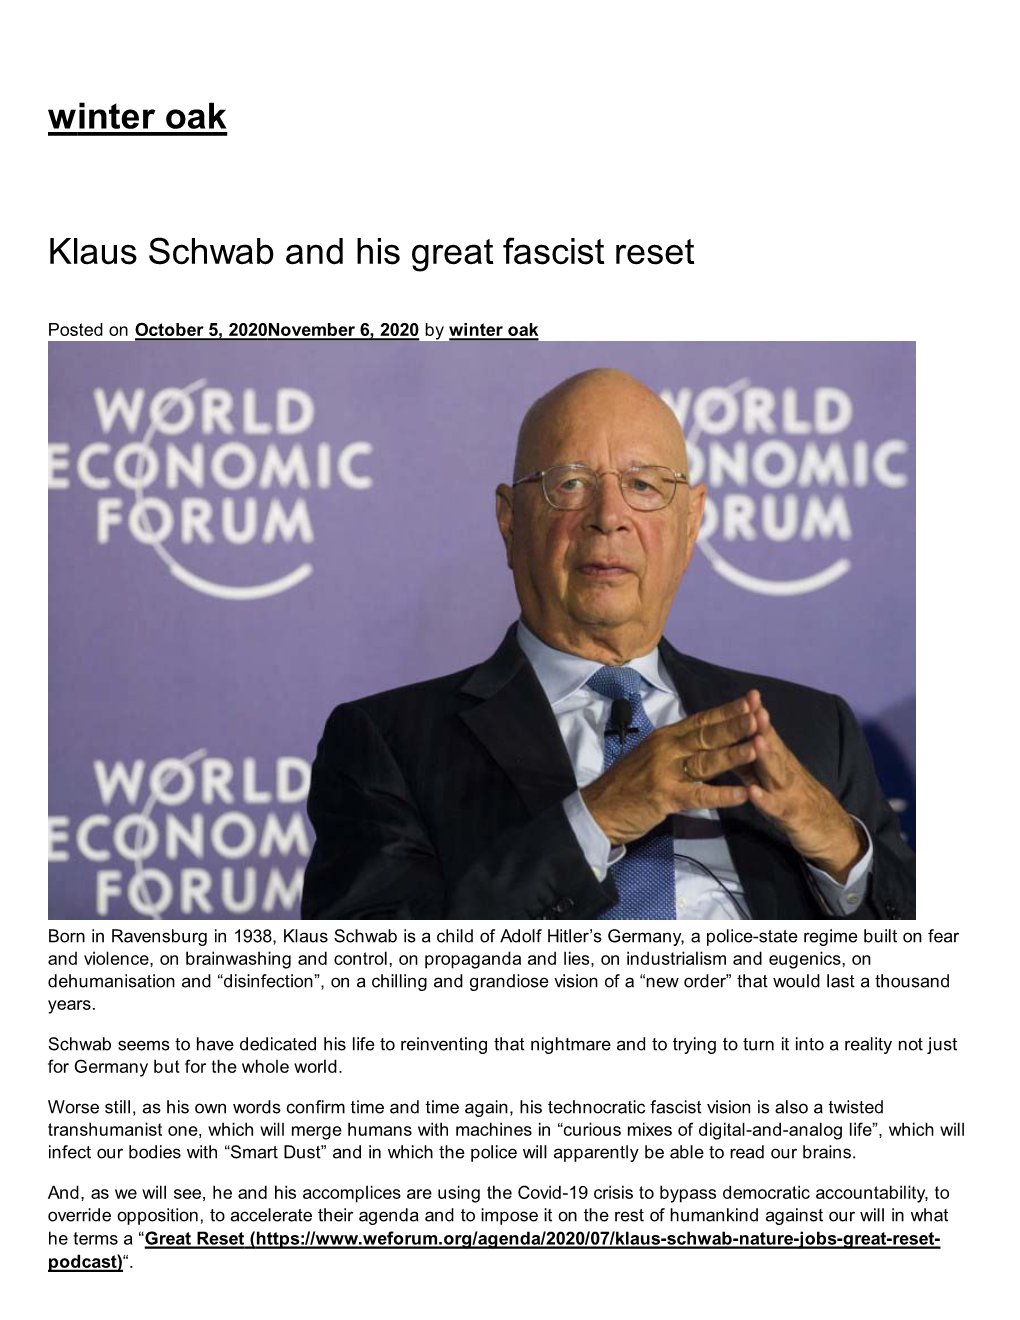 Klaus Schwab and His Great Fascist Reset